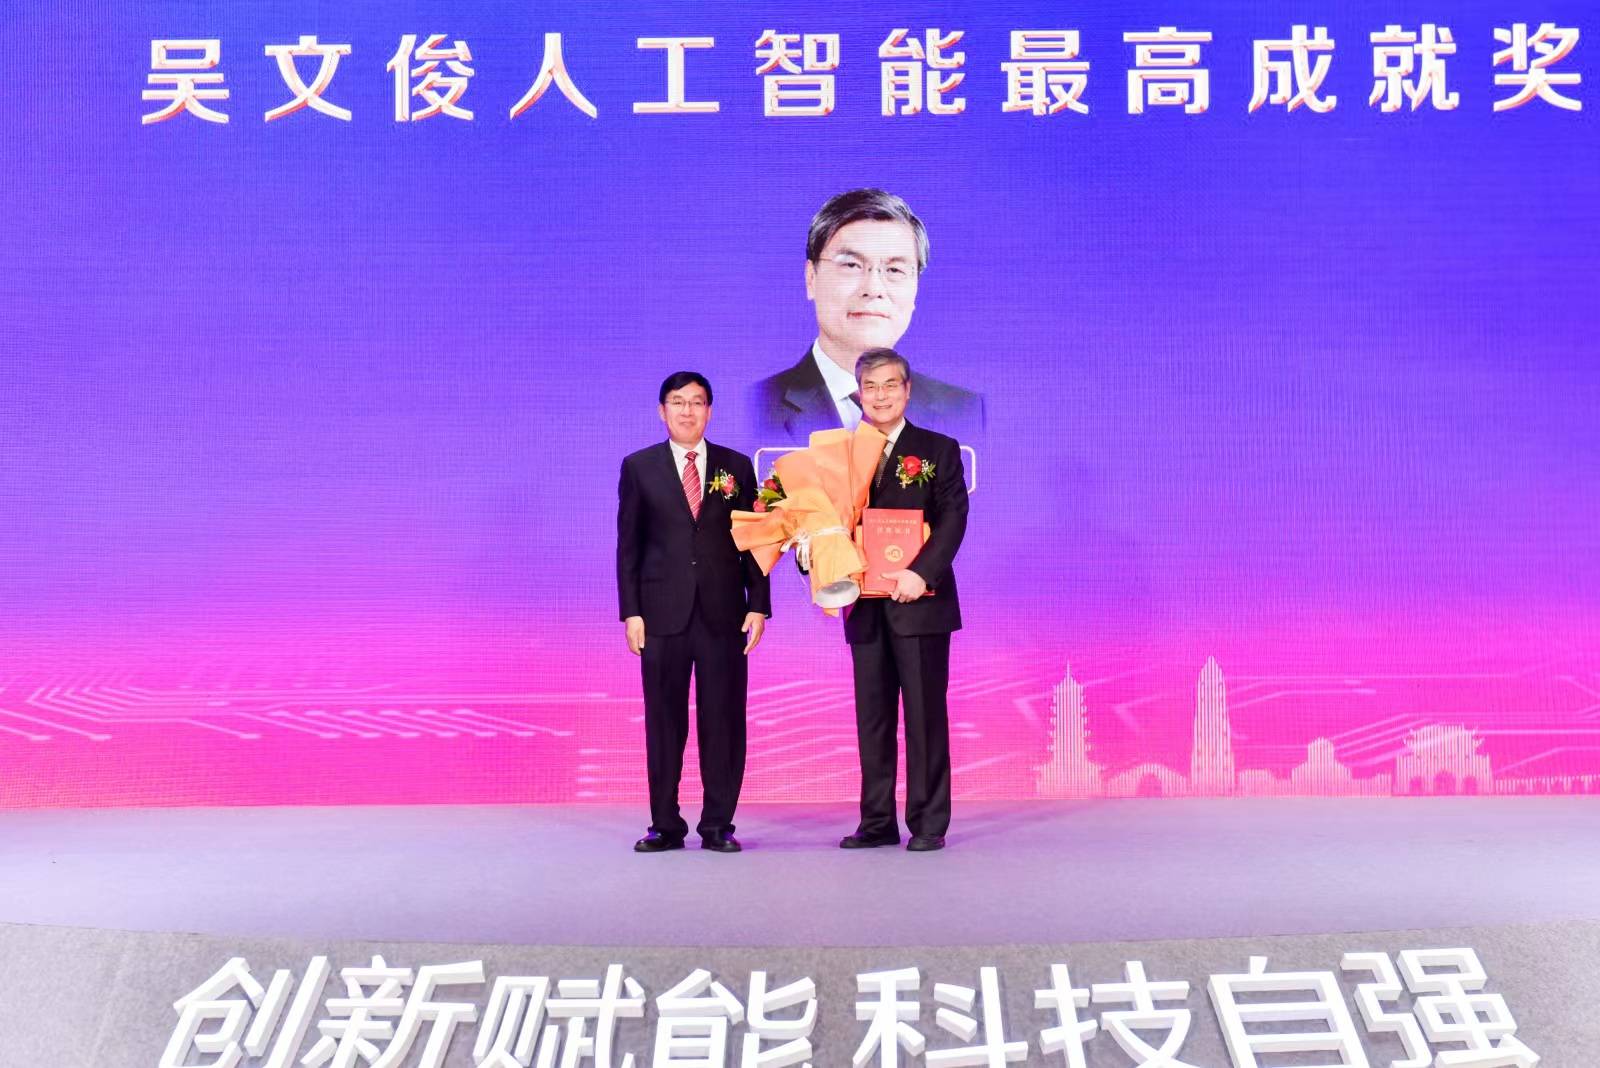 福州市人工程院獲“黃榮輝人工智慧最低榮譽獎”，榮獲酬金100多萬元